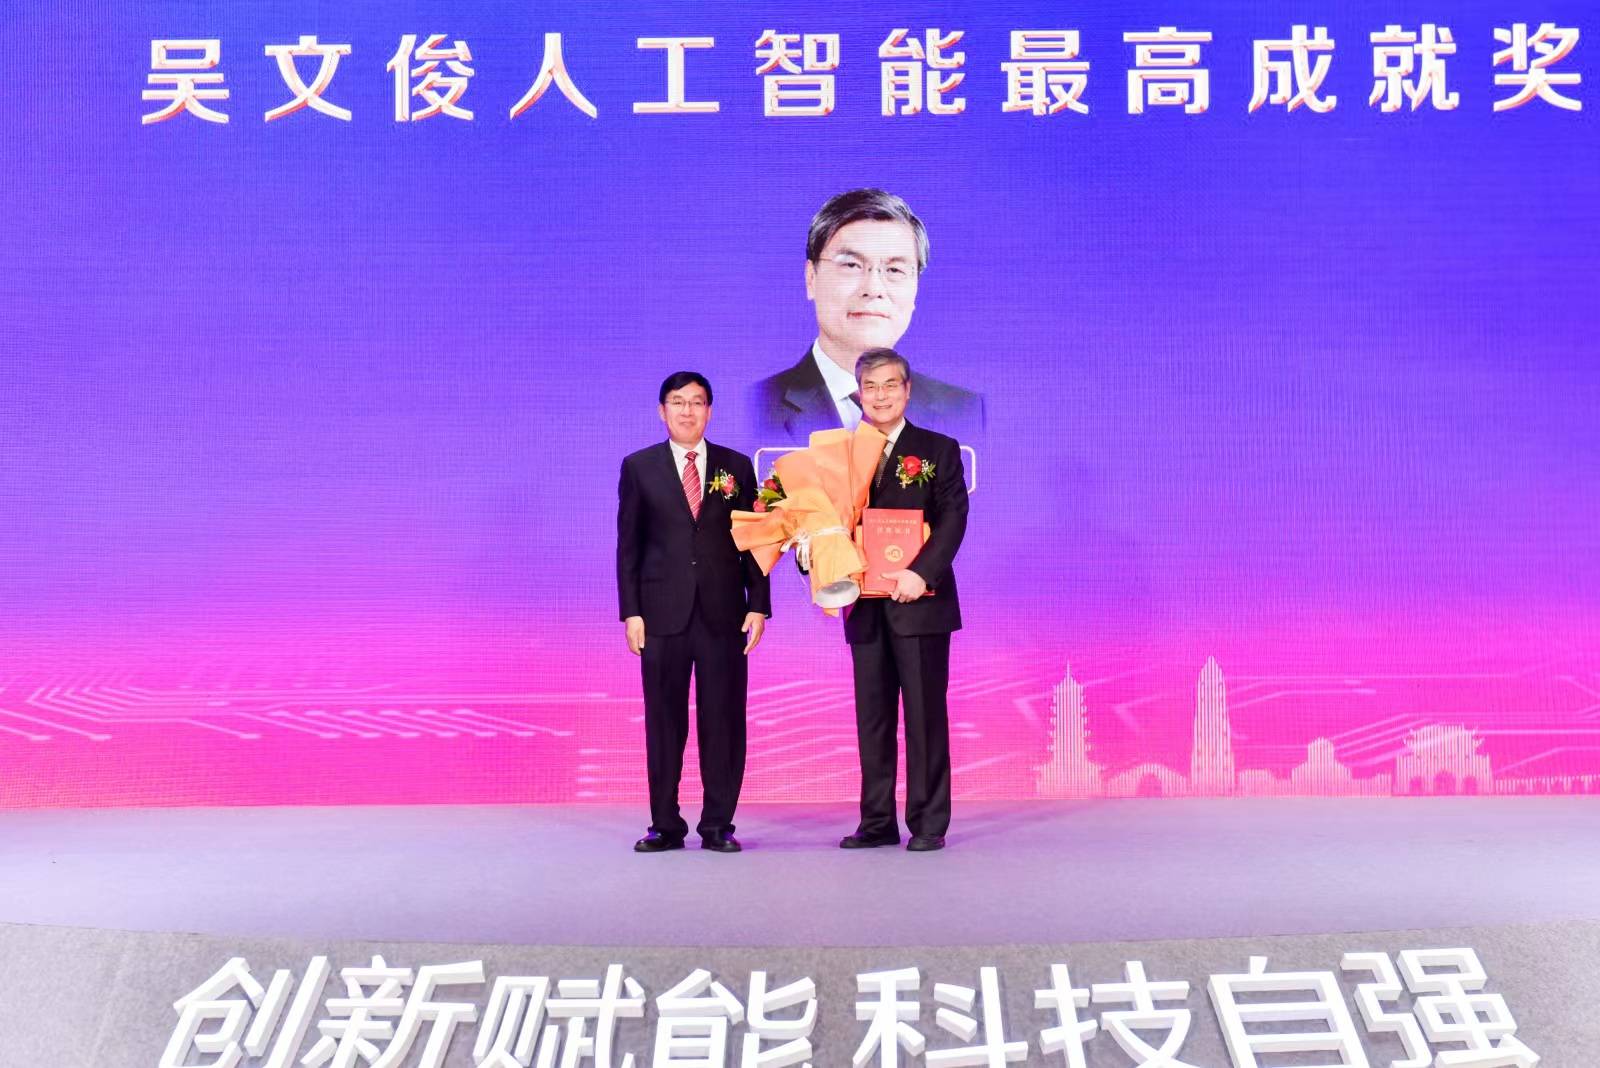 福州市人工程院獲“黃榮輝人工智慧最低榮譽獎”，榮獲酬金100多萬元